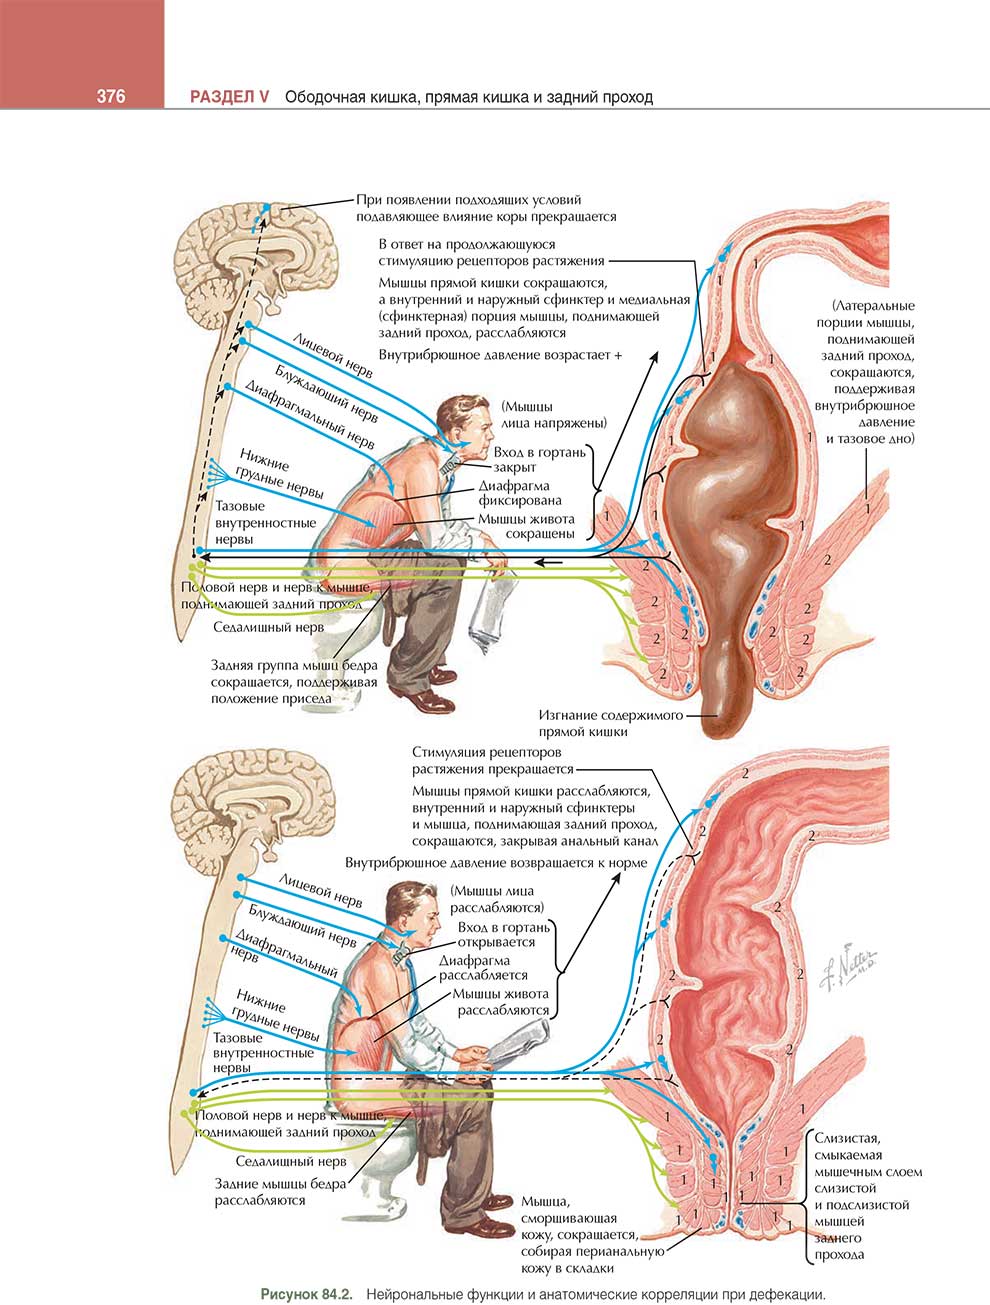 Нейрональные функции и анатомические корреляции при дефекации